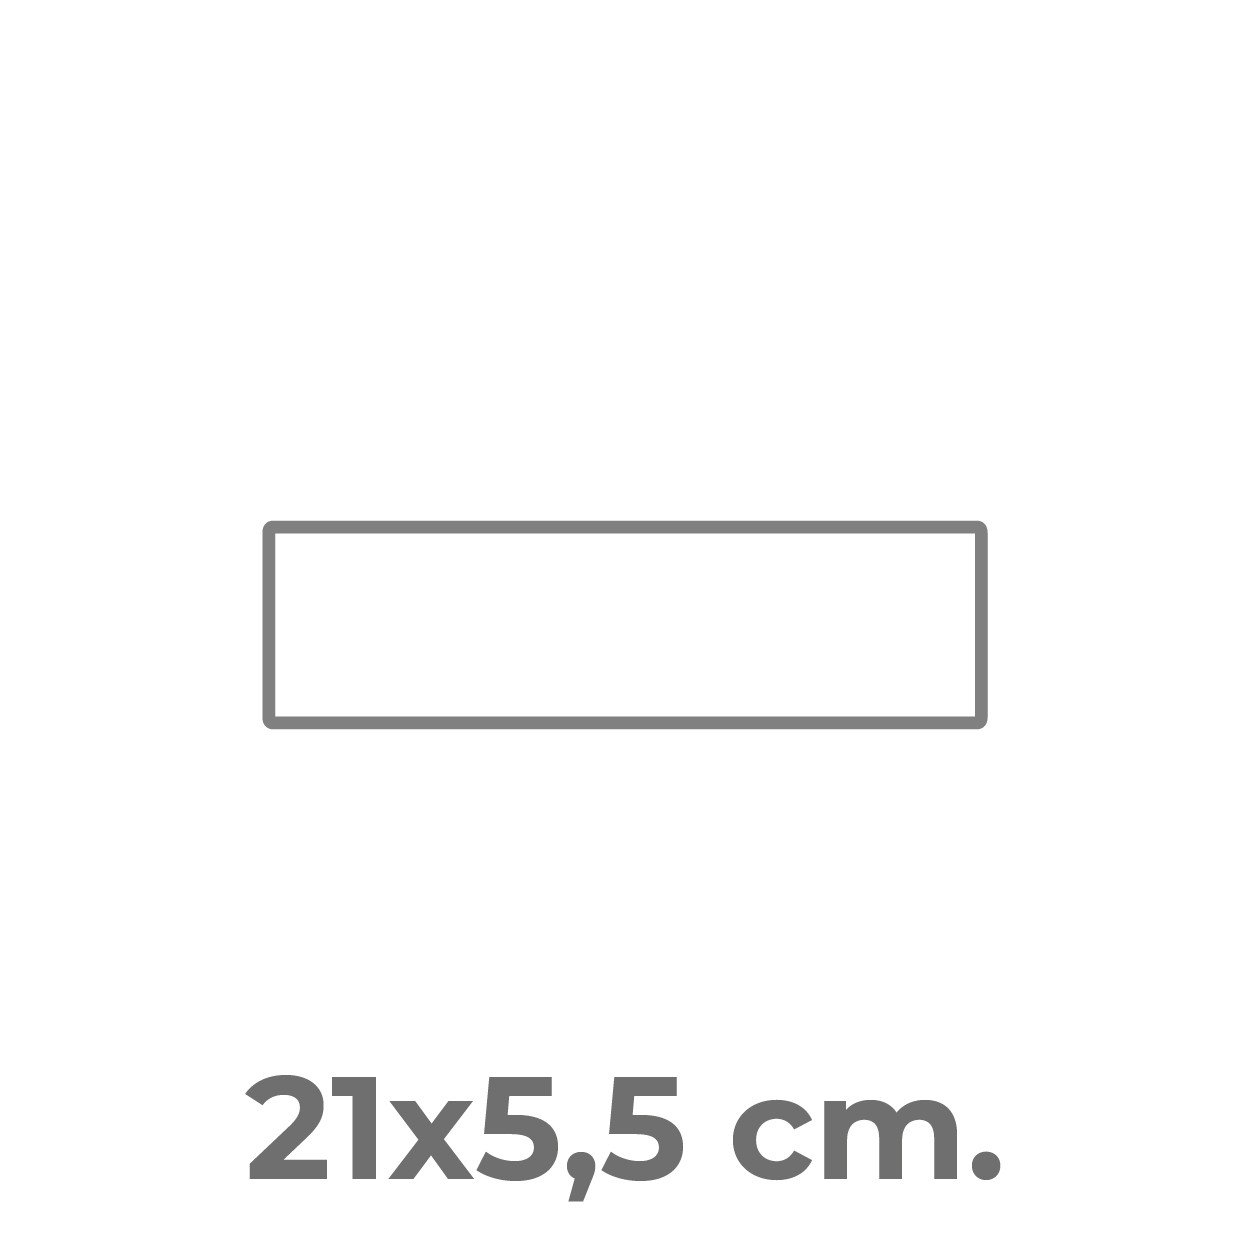 21x5,5 cm